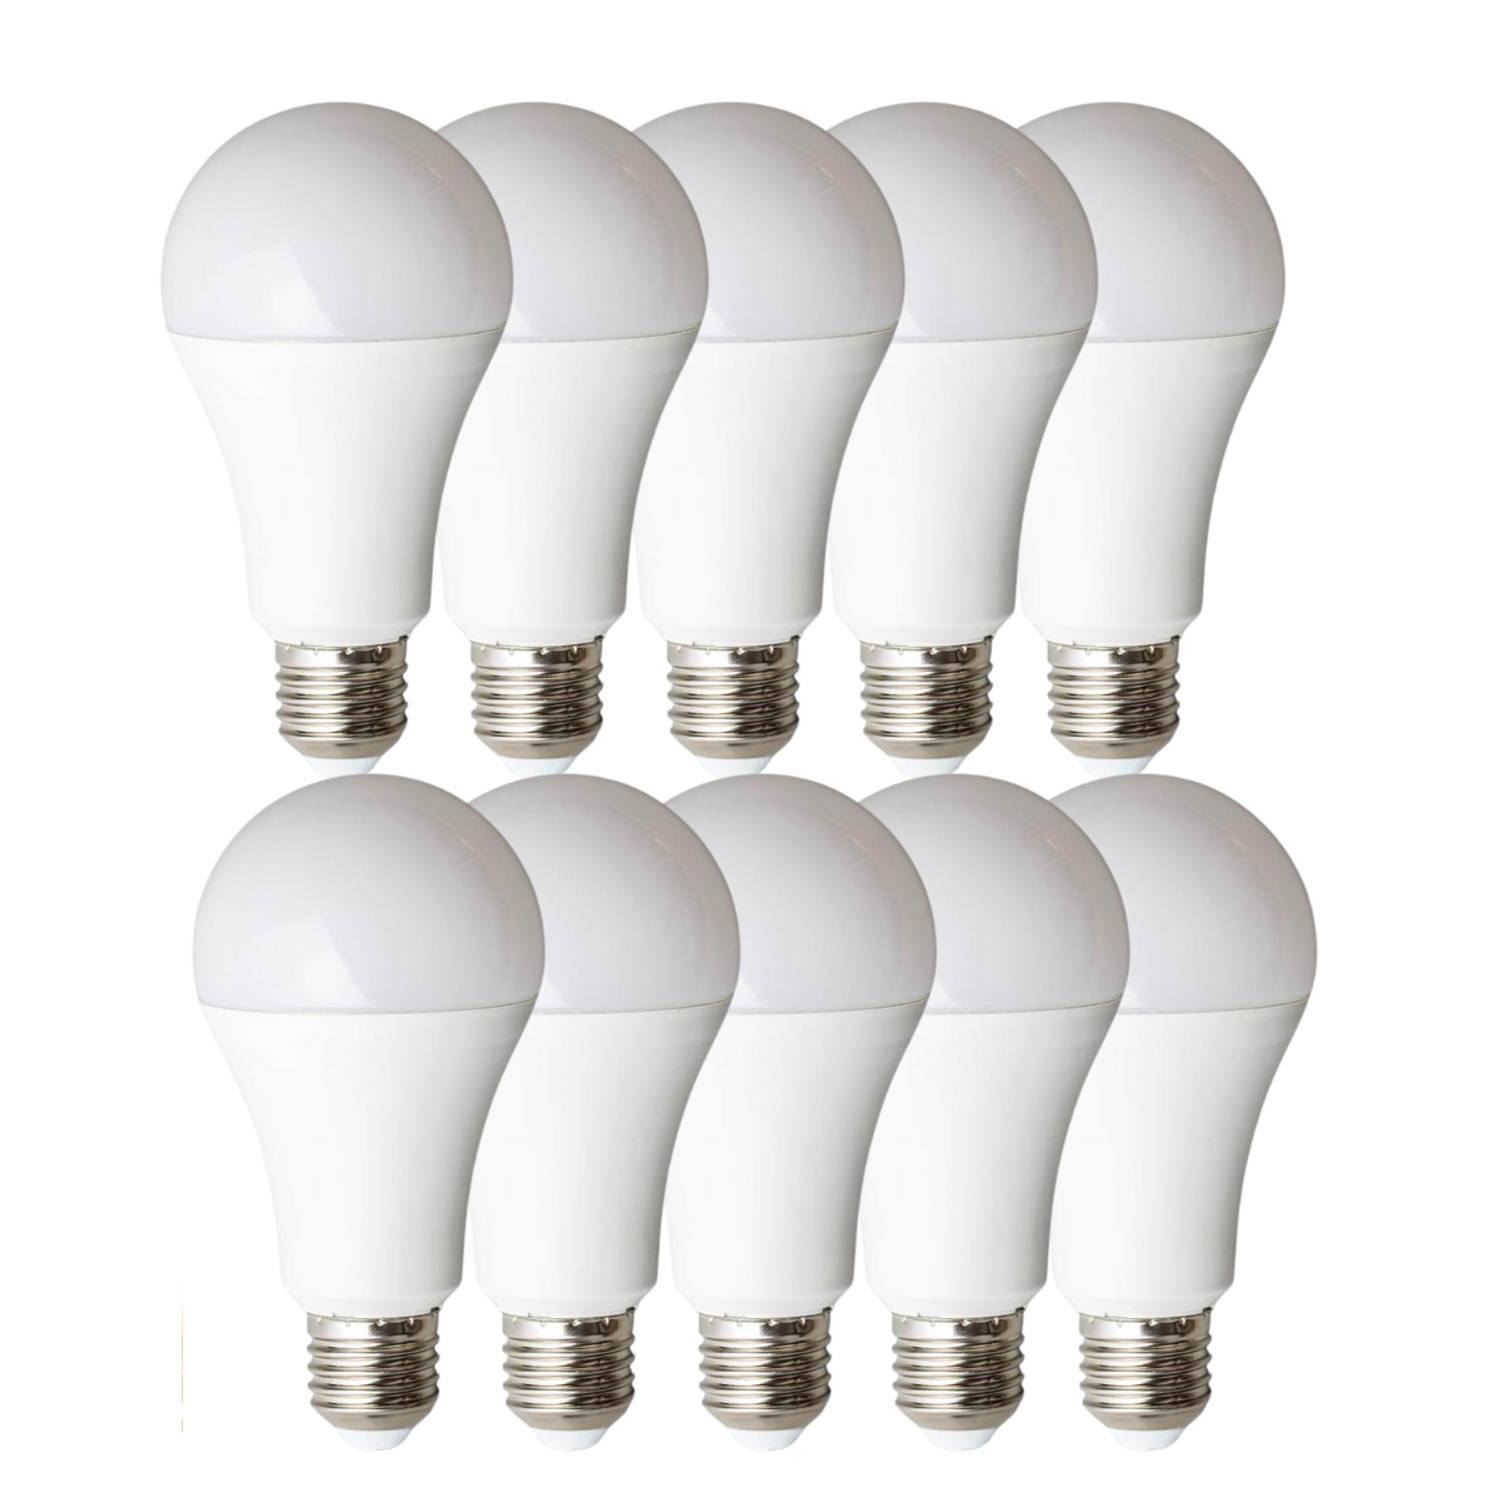 Proventa PowerPlus LED lampen met grote E27 fitting - Voordeelverpakking - 10 x krachtige LED lamp